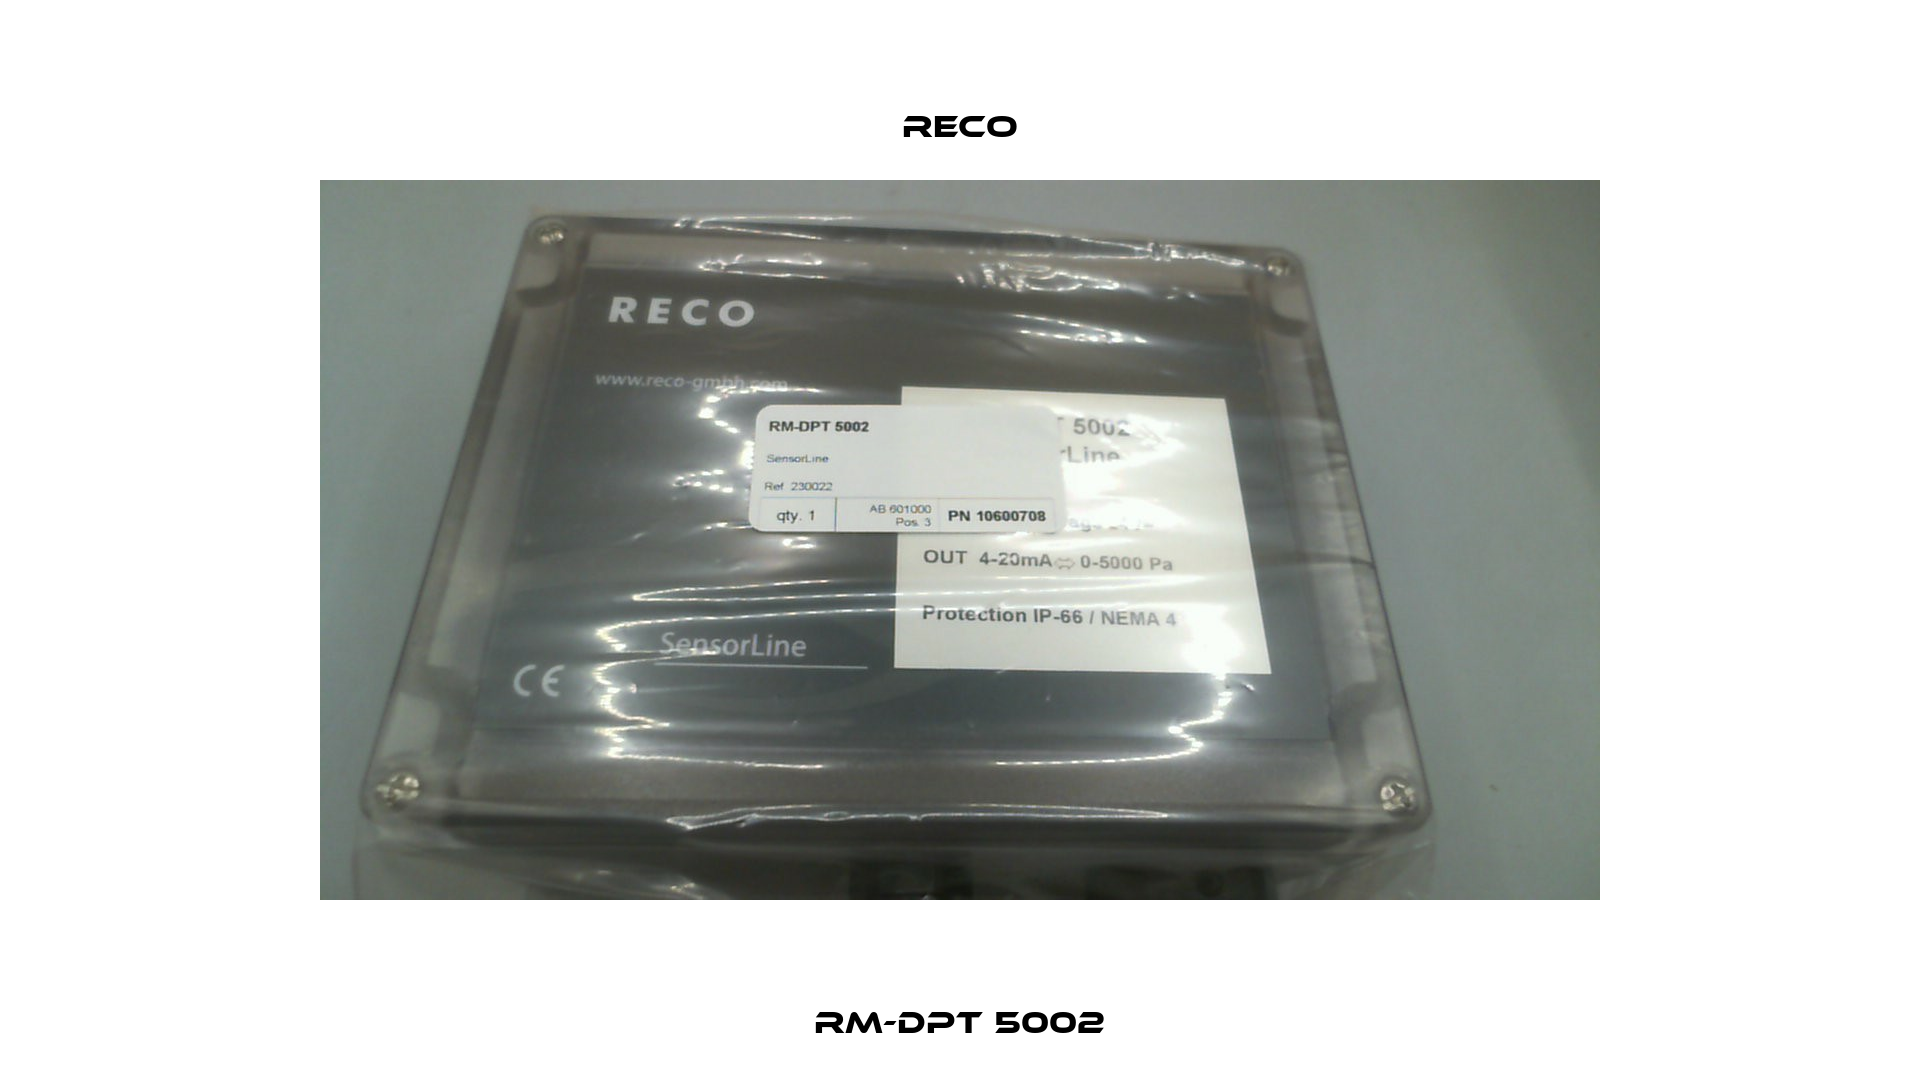 RM-DPT 5002 Reco